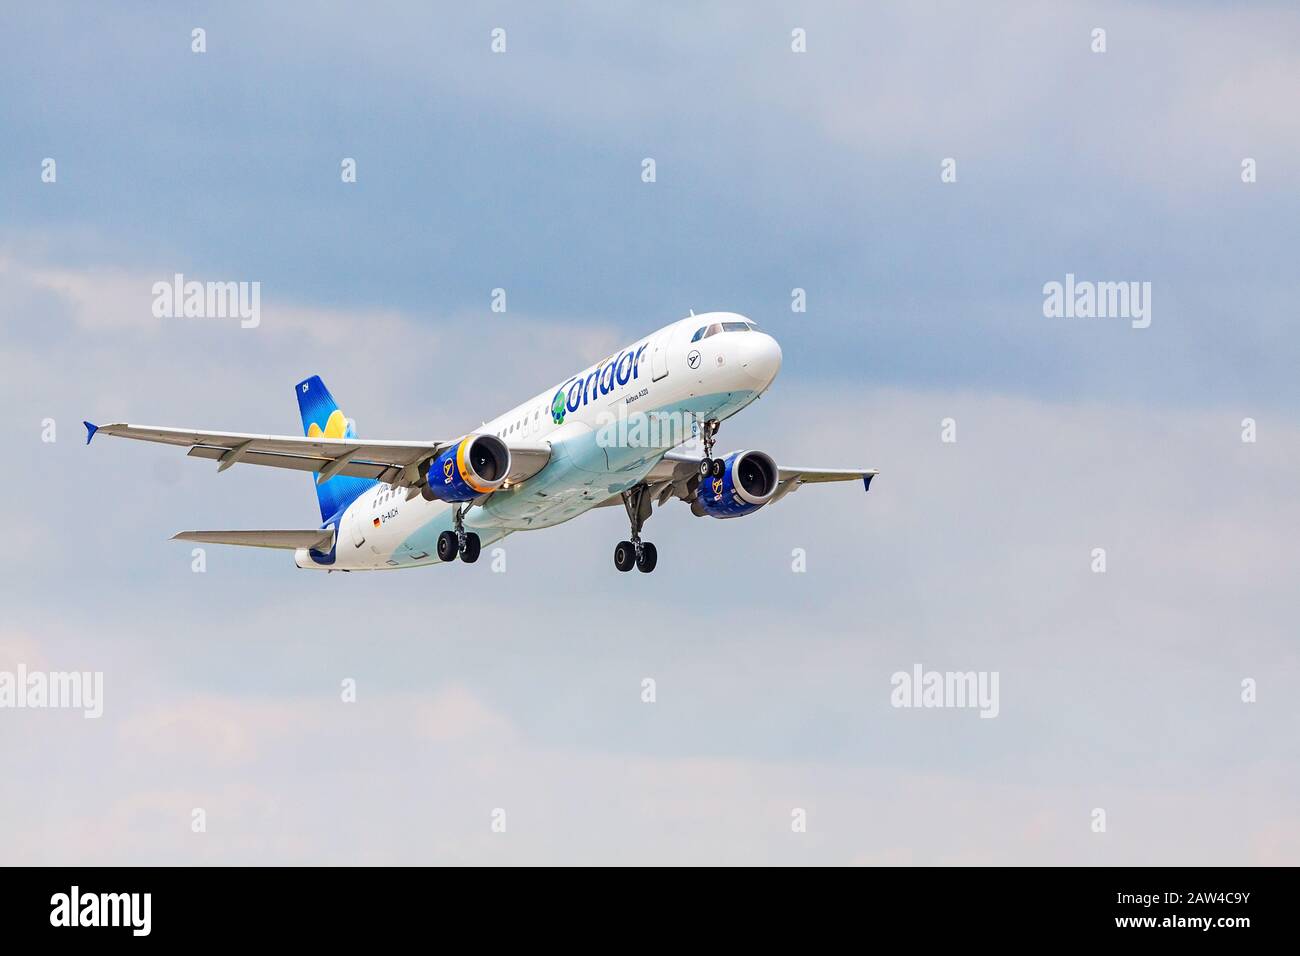 Stoccarda, Germania - 29 aprile 2017: Airbus A320 da Condor dopo il decollo dalla pista - aeroporto di Stoccarda, cielo blu con nuvole in backgroun Foto Stock